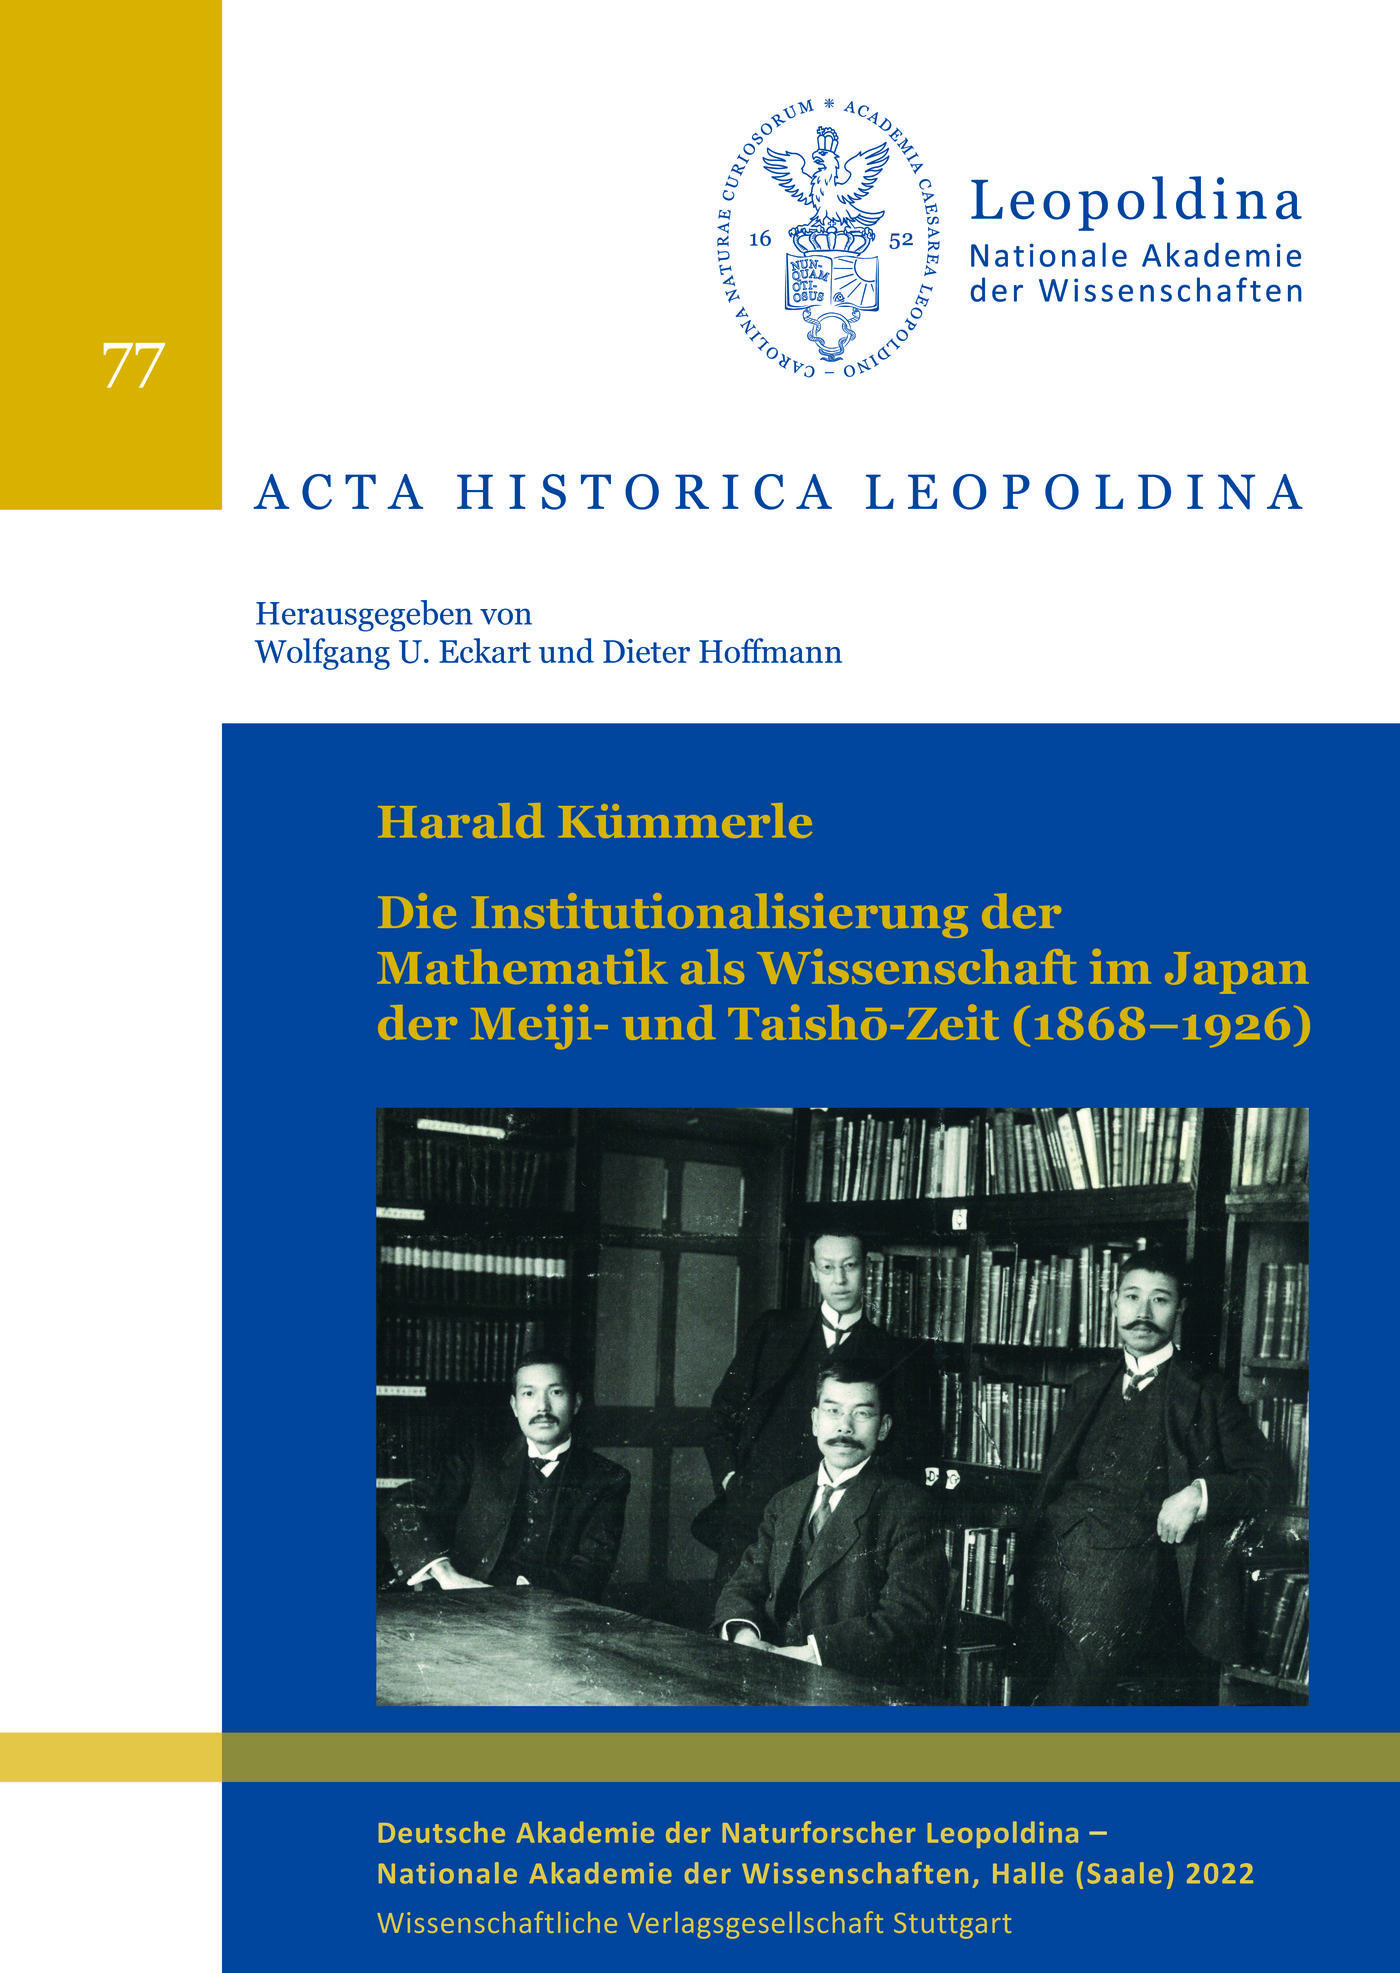 Die Institutionalisierung der Mathematik als Wissenschaft im Japan der Meiji- und Taishō-Zeit (1868–1926)